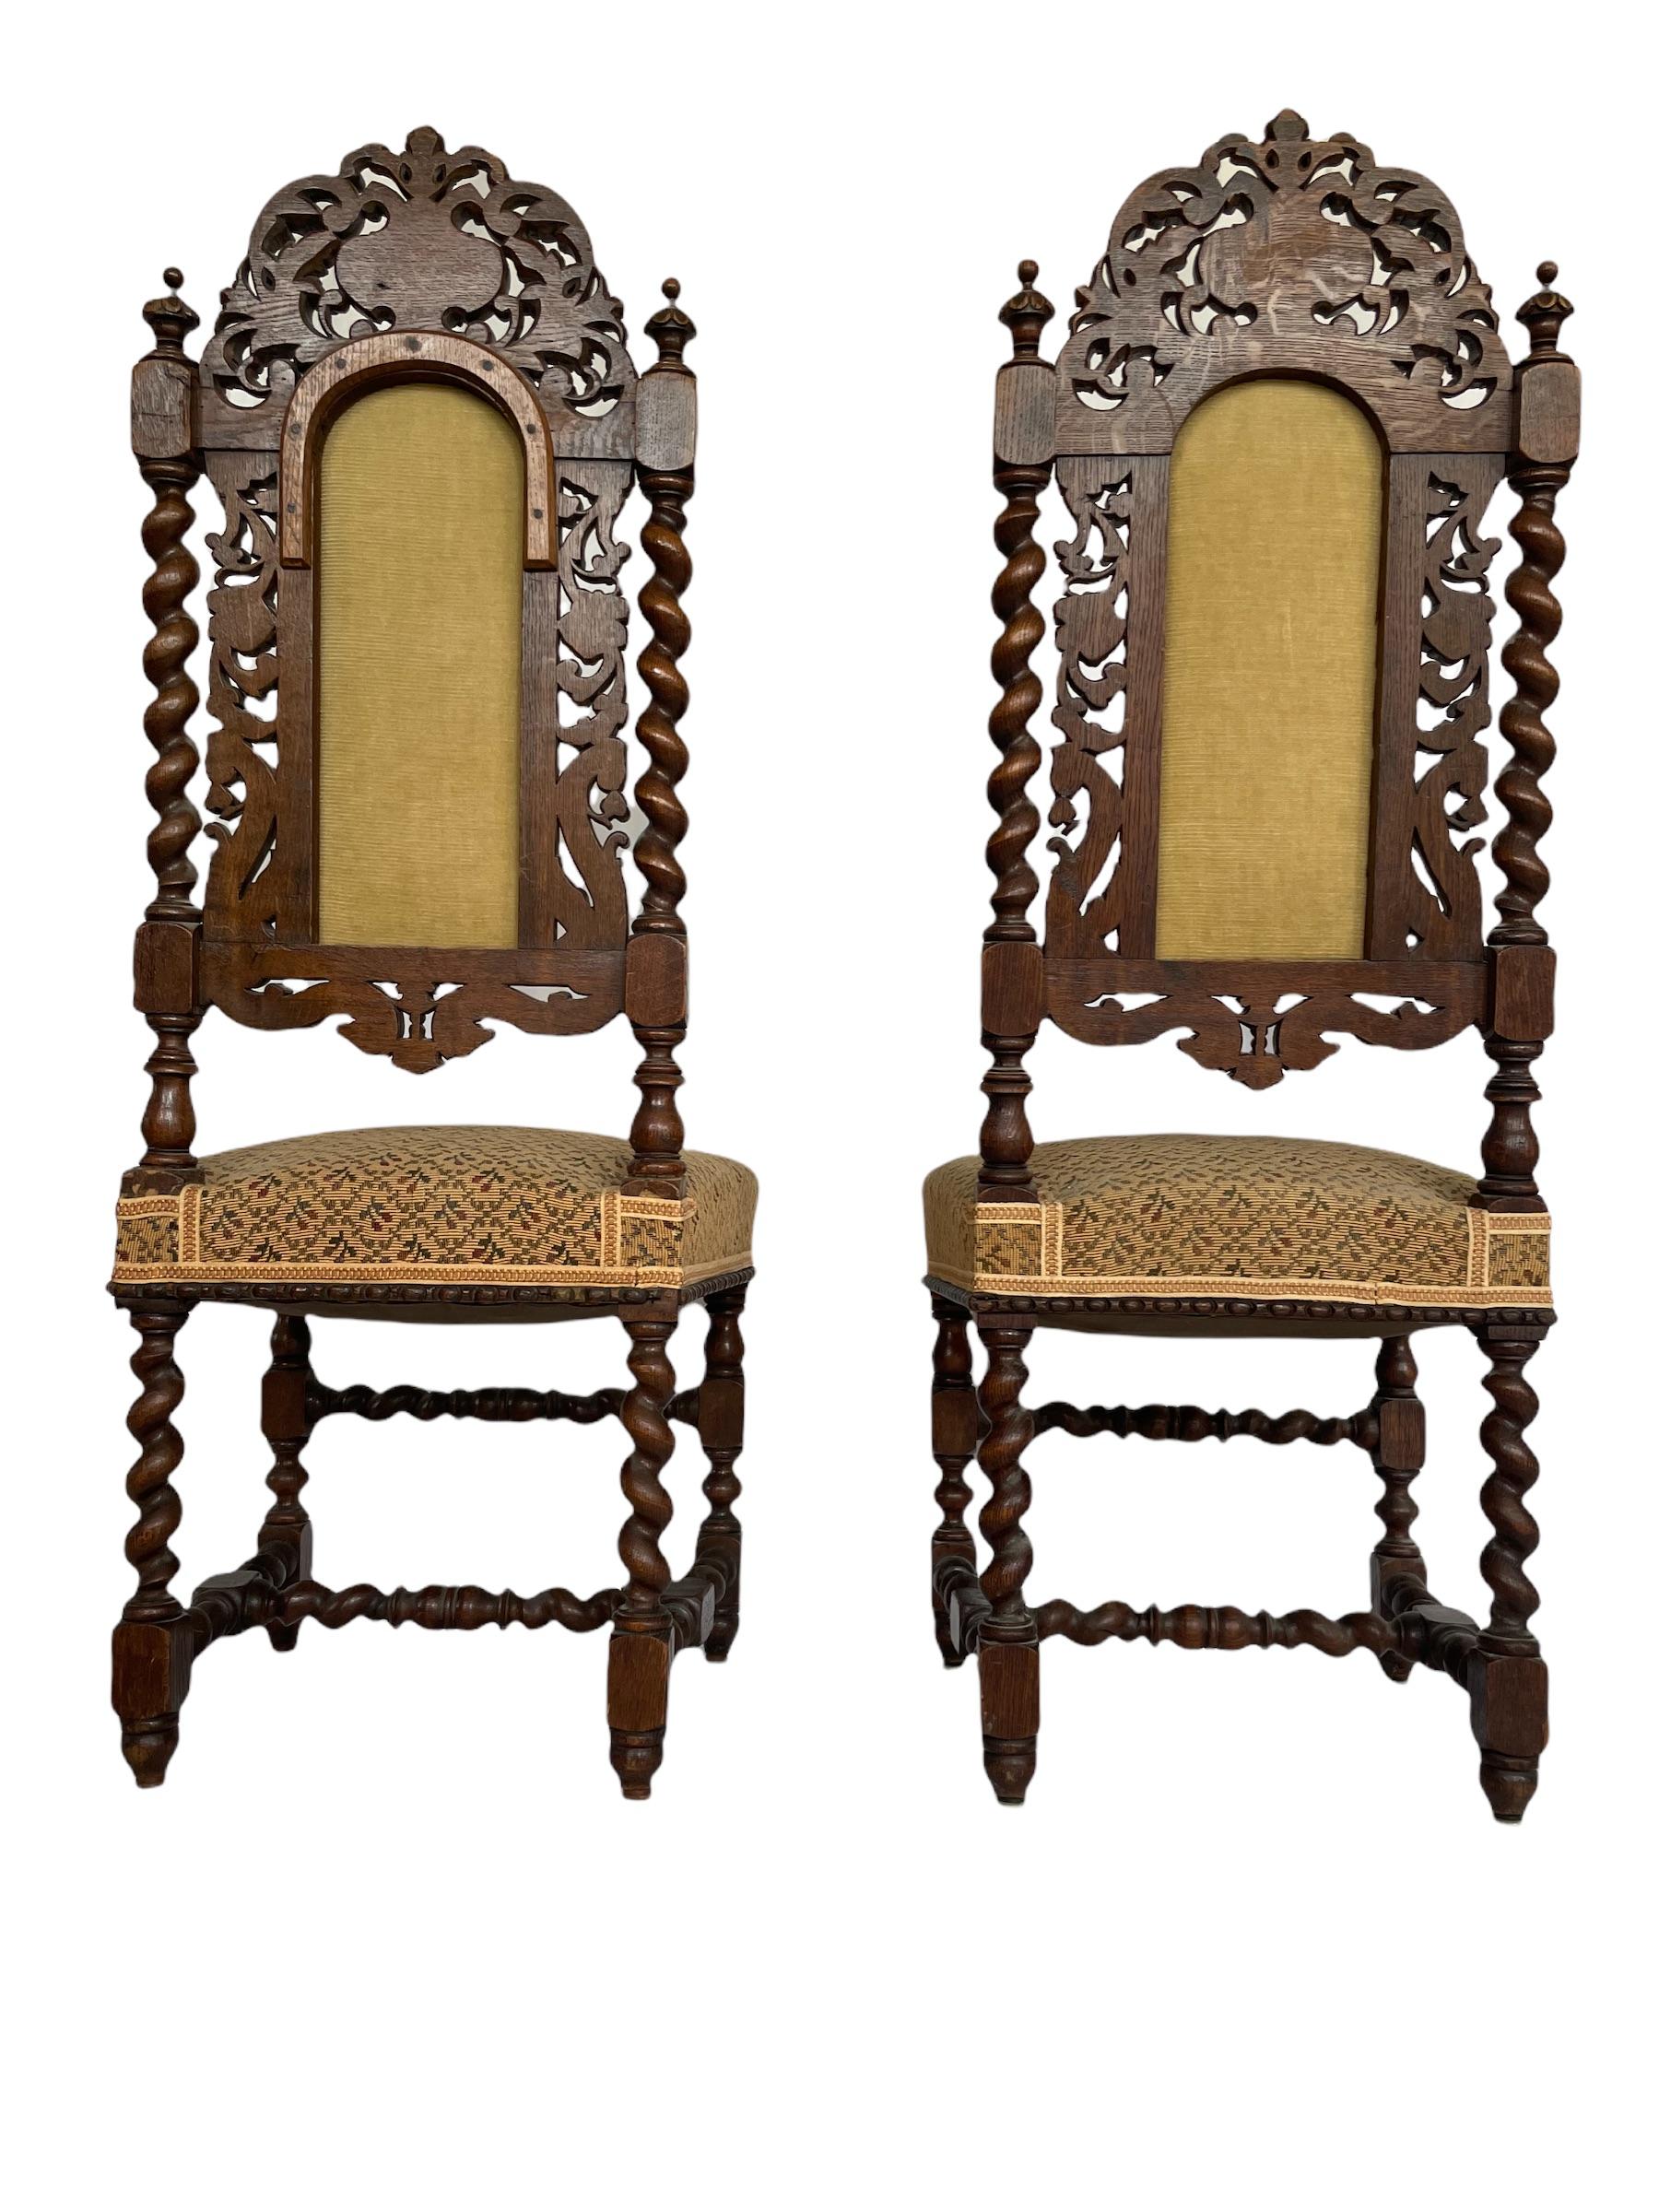 Belle paire de chaises de style Renaissance richement sculptées de la période française du 19e siècle.